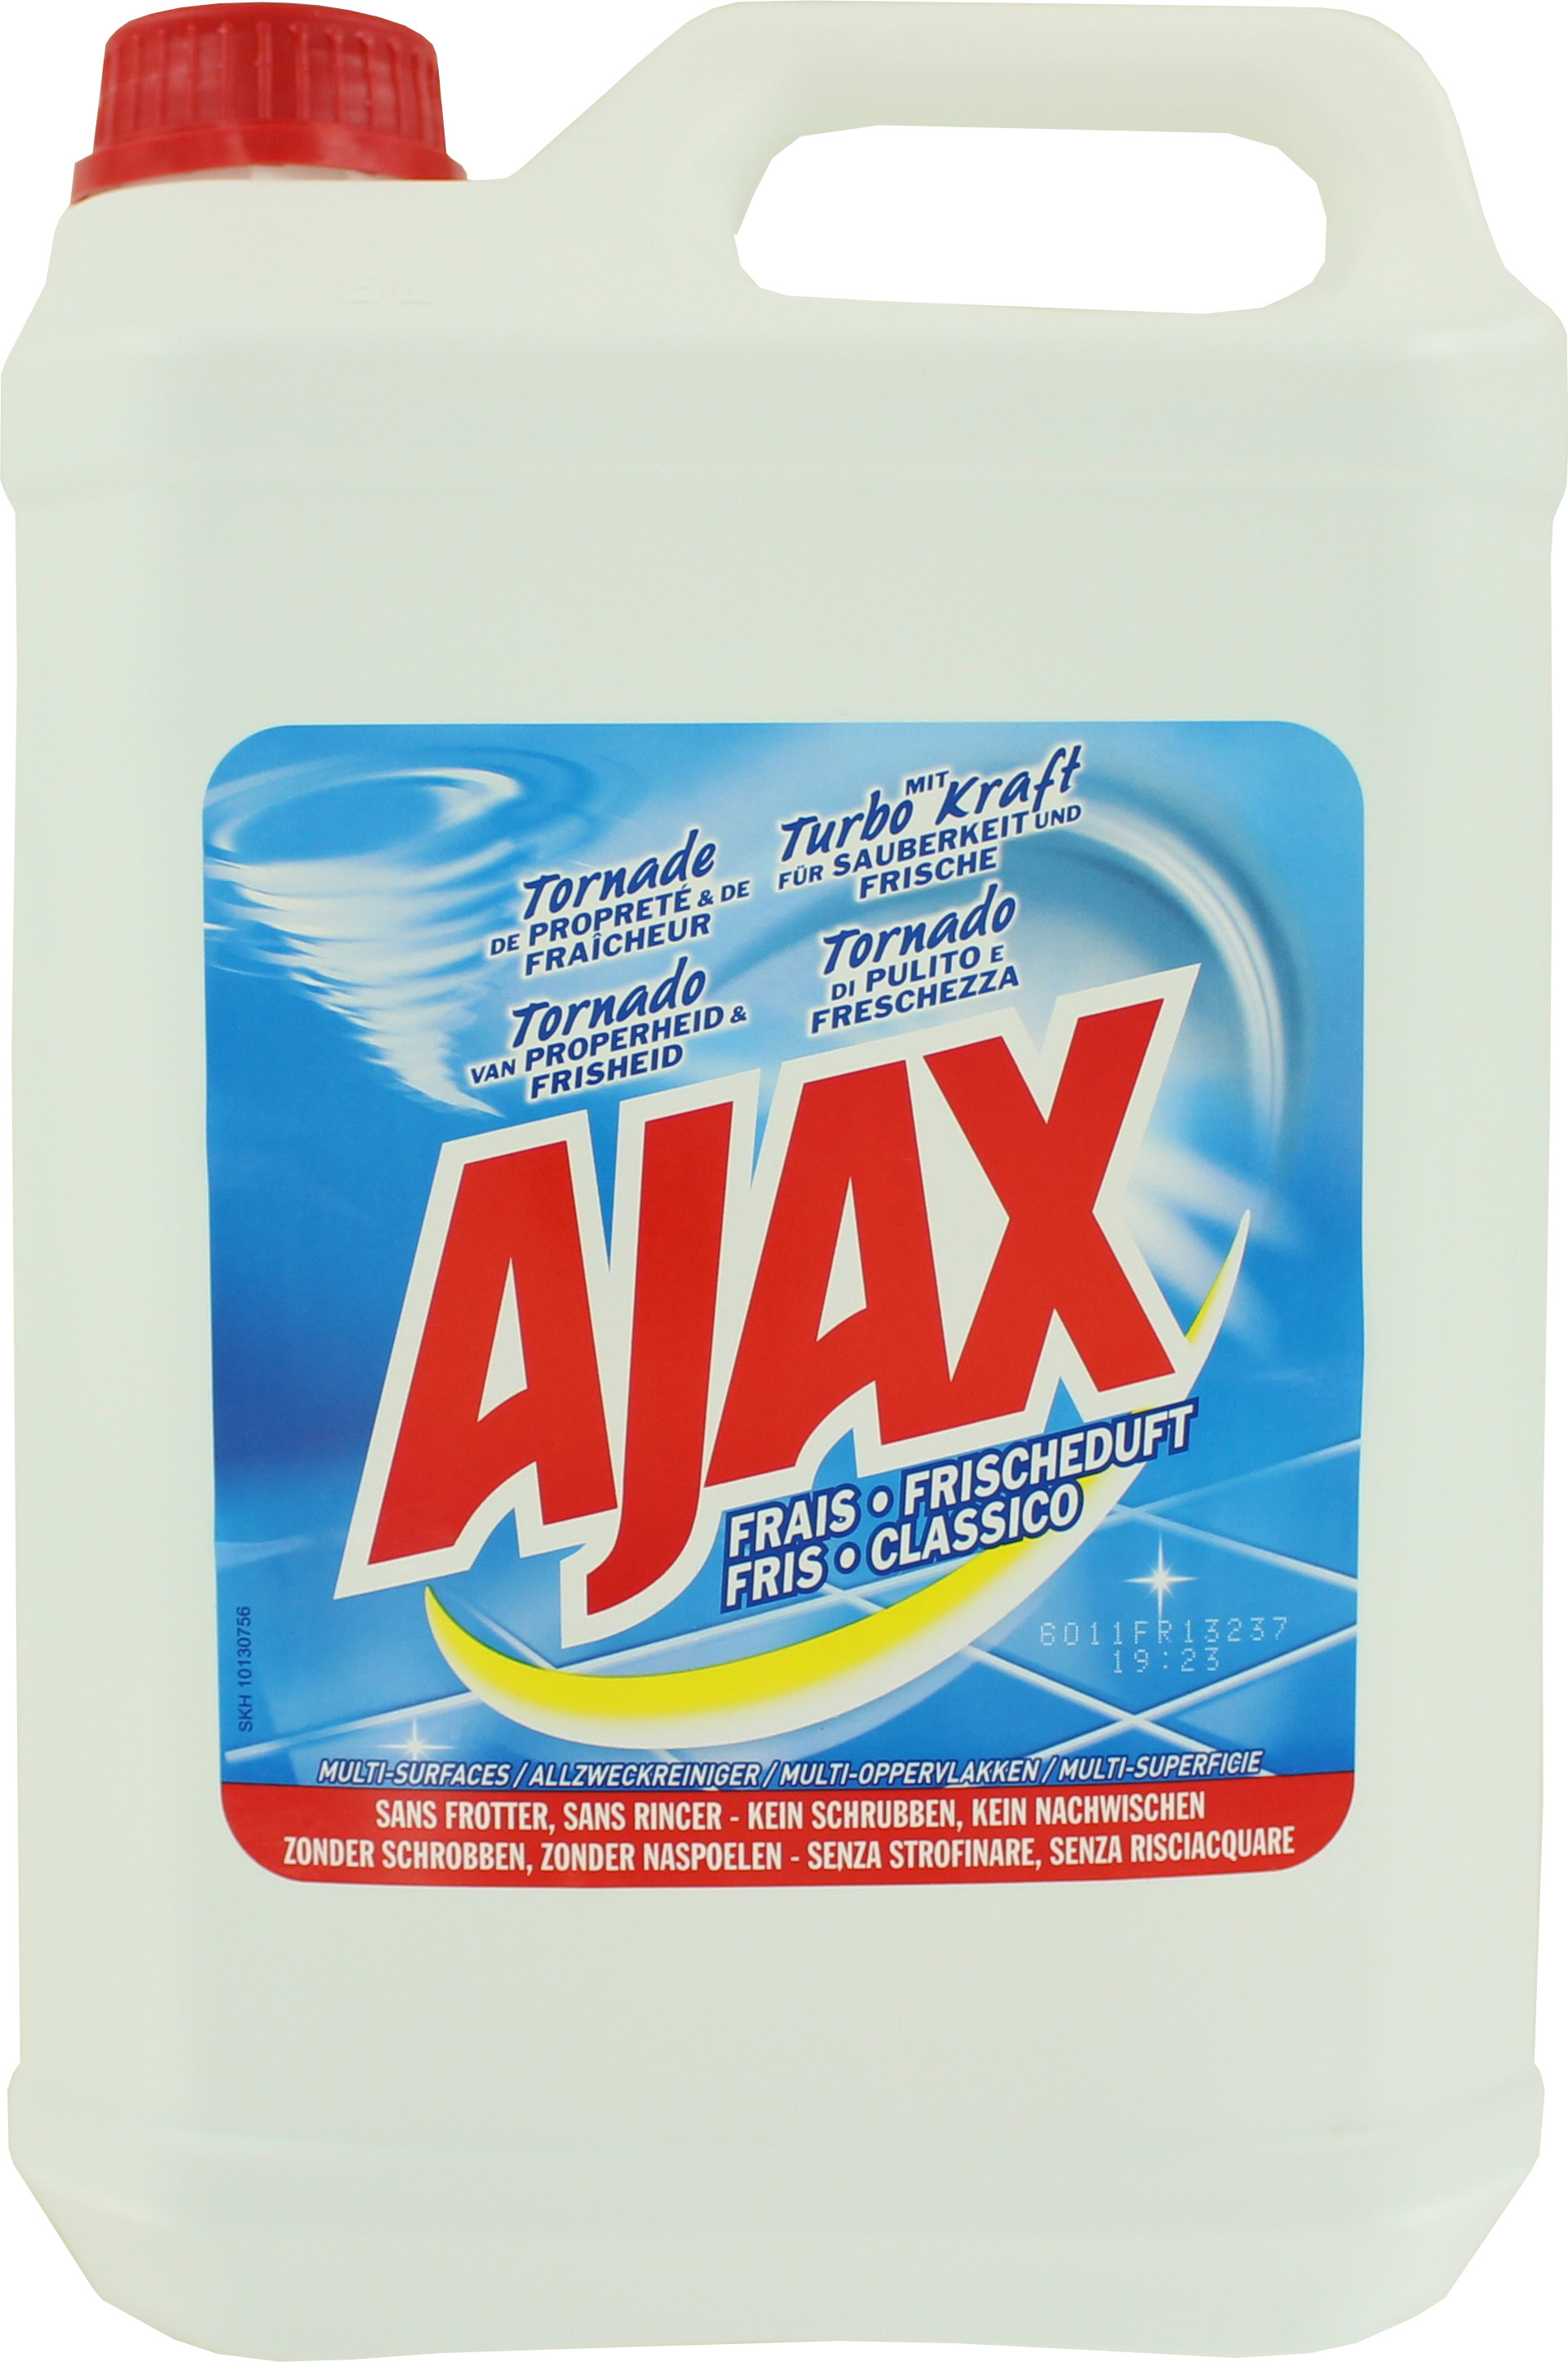 Détergent sol Ajax bidon de 5 L parfumé